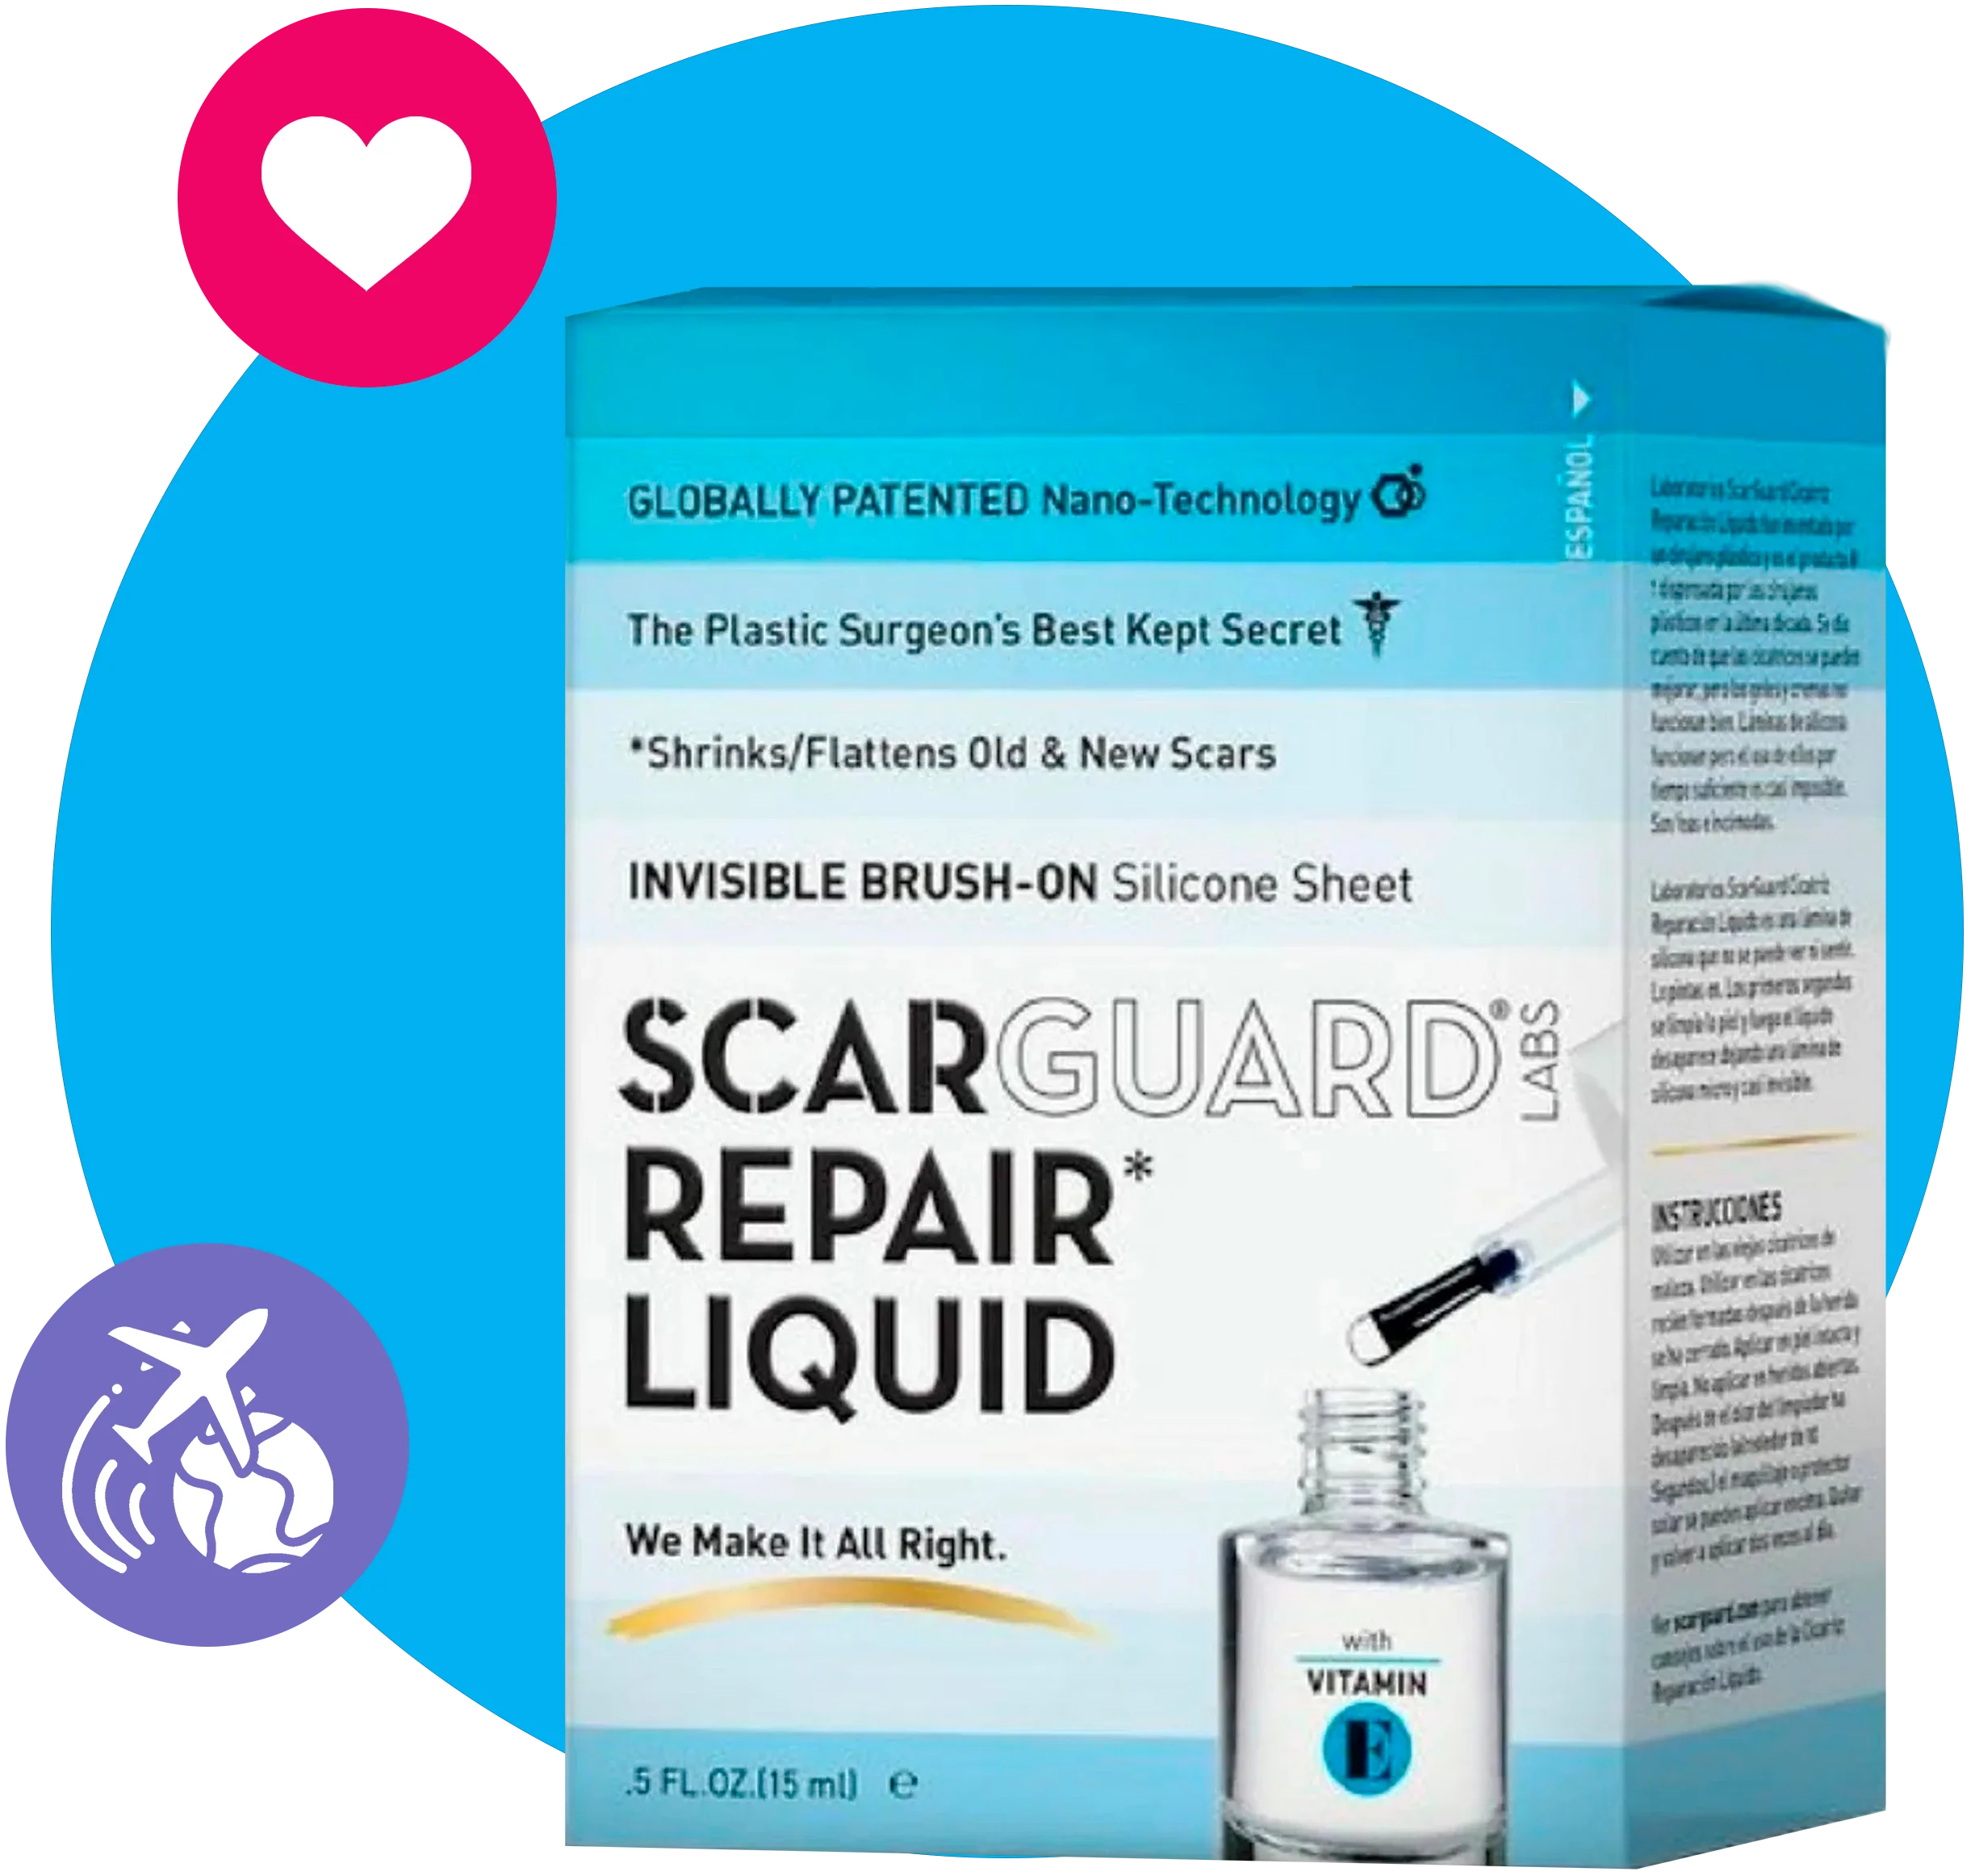 Scarguard Repair Liquid